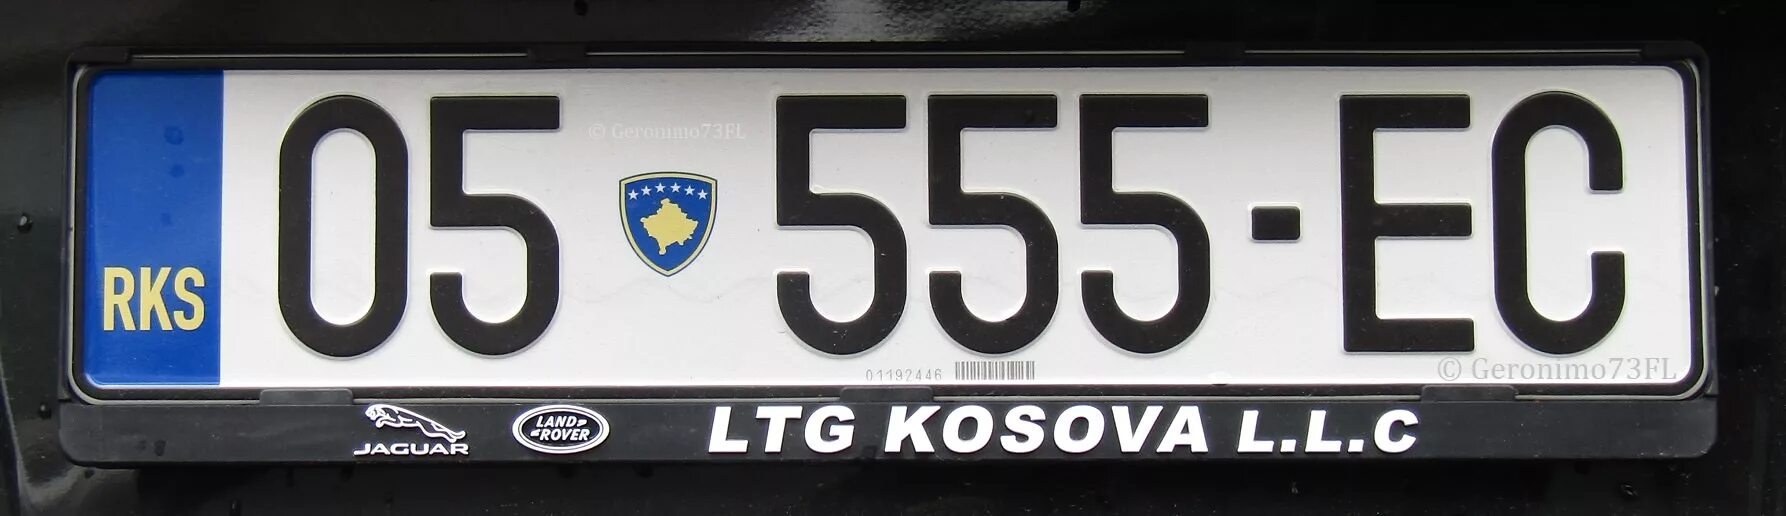 555 05 05. Косовские автономера. Автономер Косово. Номерные знаки Косово. Автономера Албании.